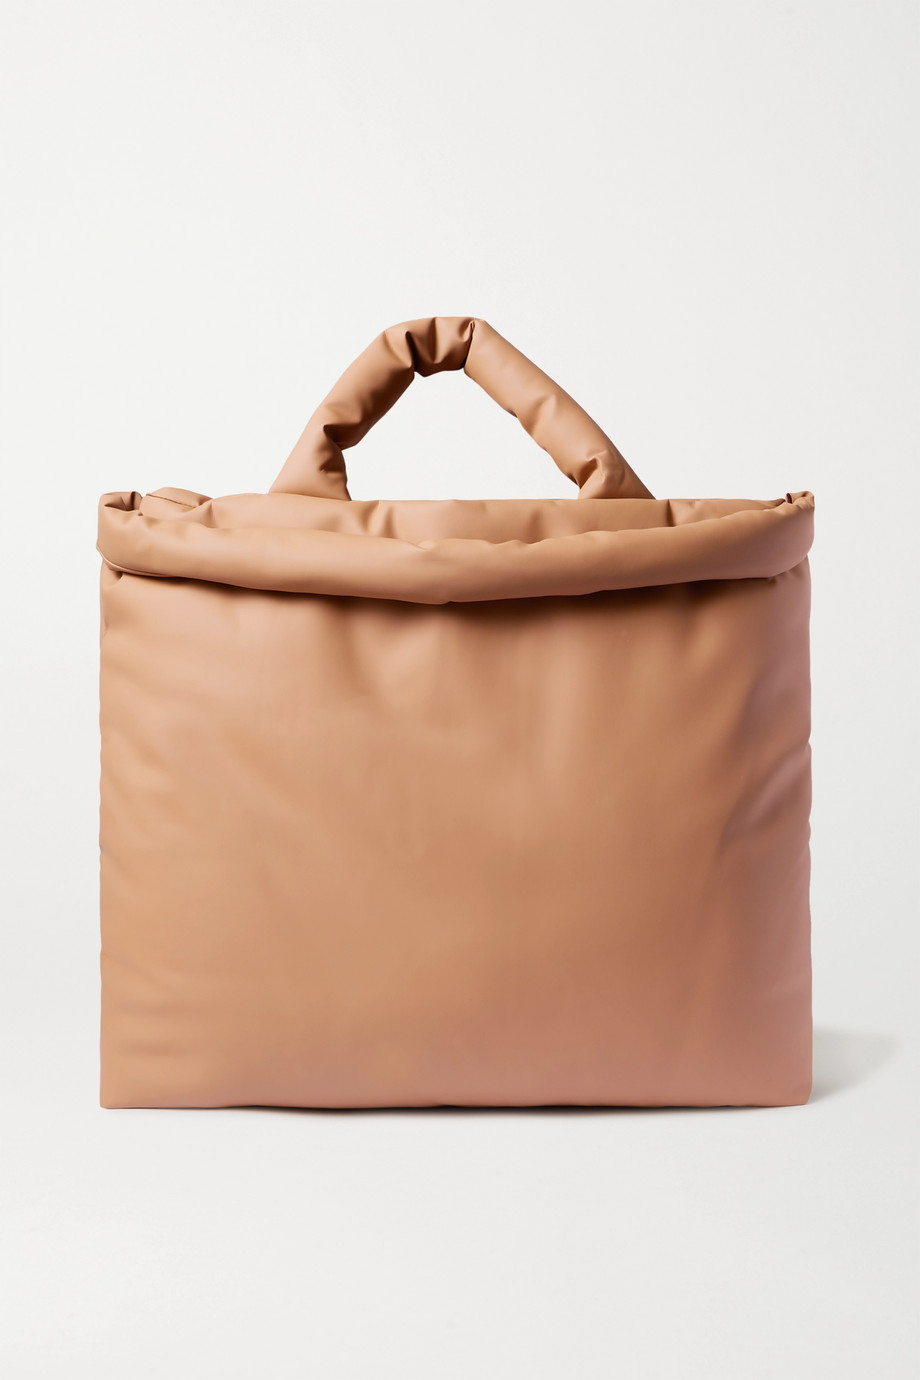 Shop LOEWE Small Horseshoe Colorblock Leather Saddle Bag